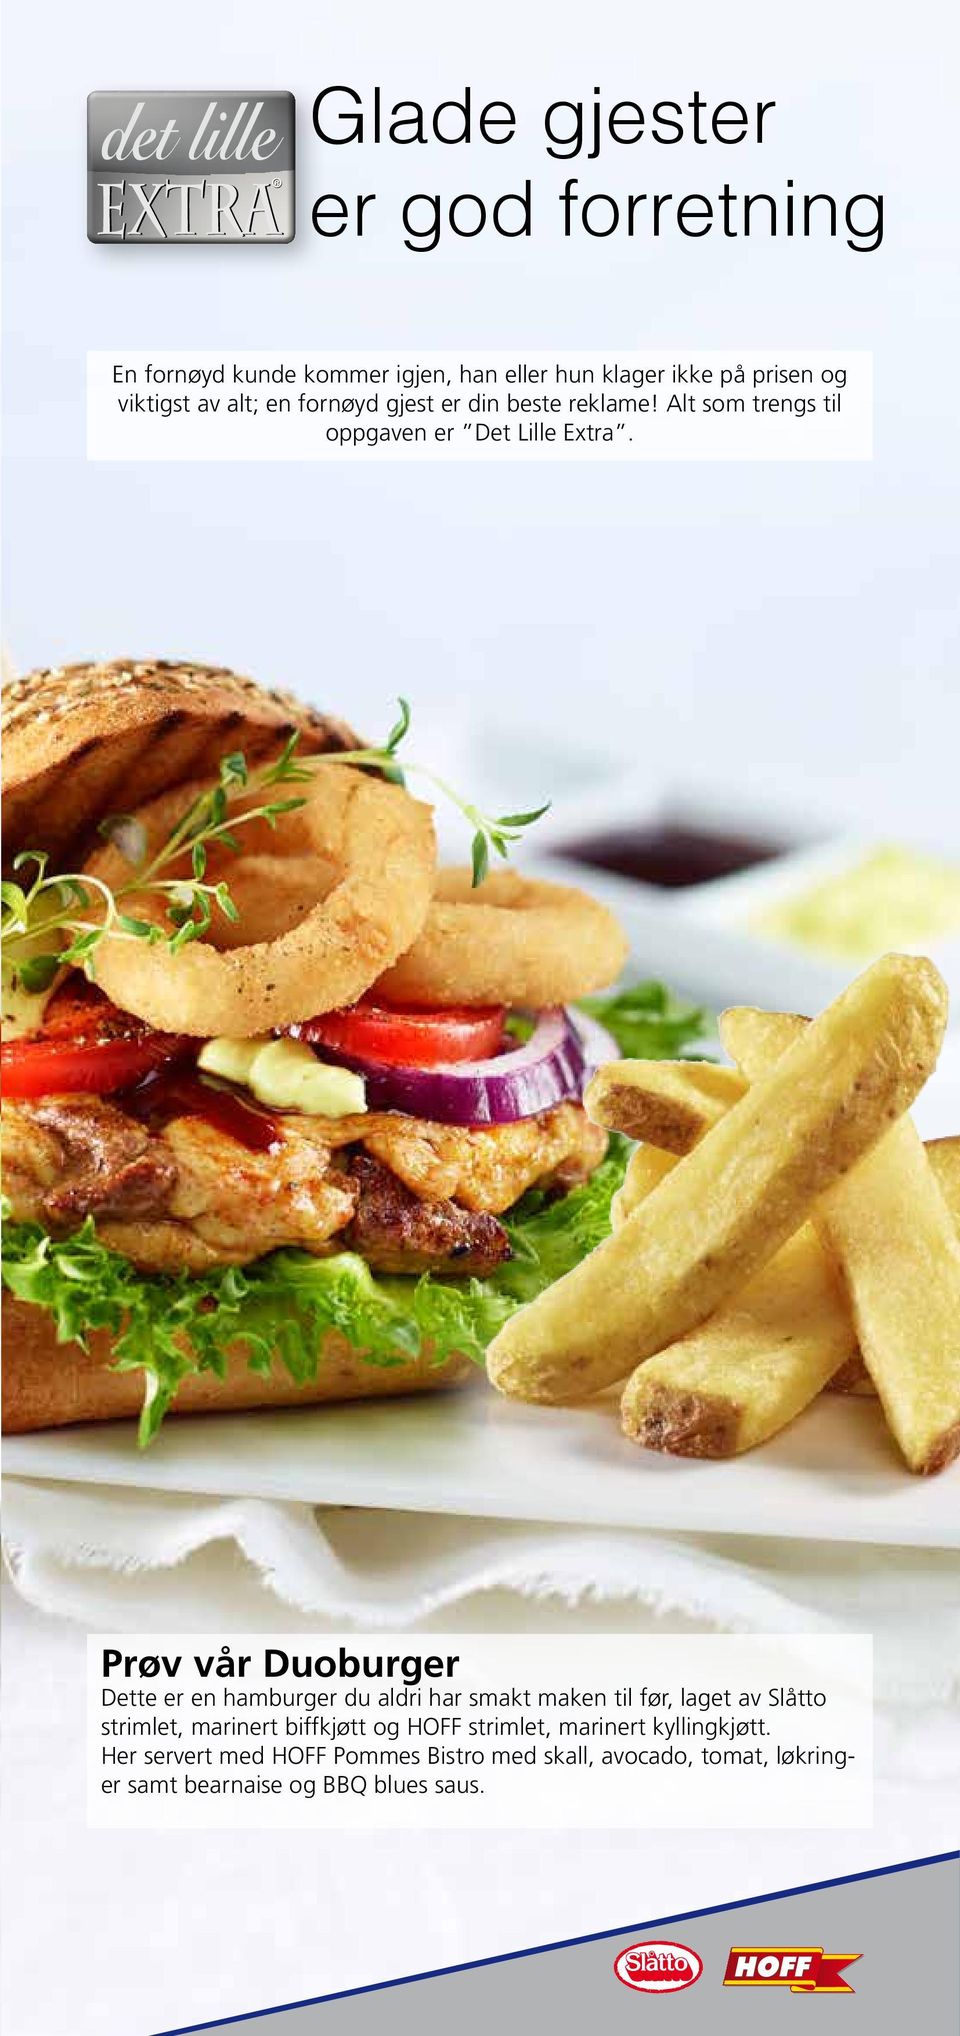 Prøv vår Duoburger Dette er en hamburger du aldri har smakt maken til før, laget av Slåtto strimlet, marinert